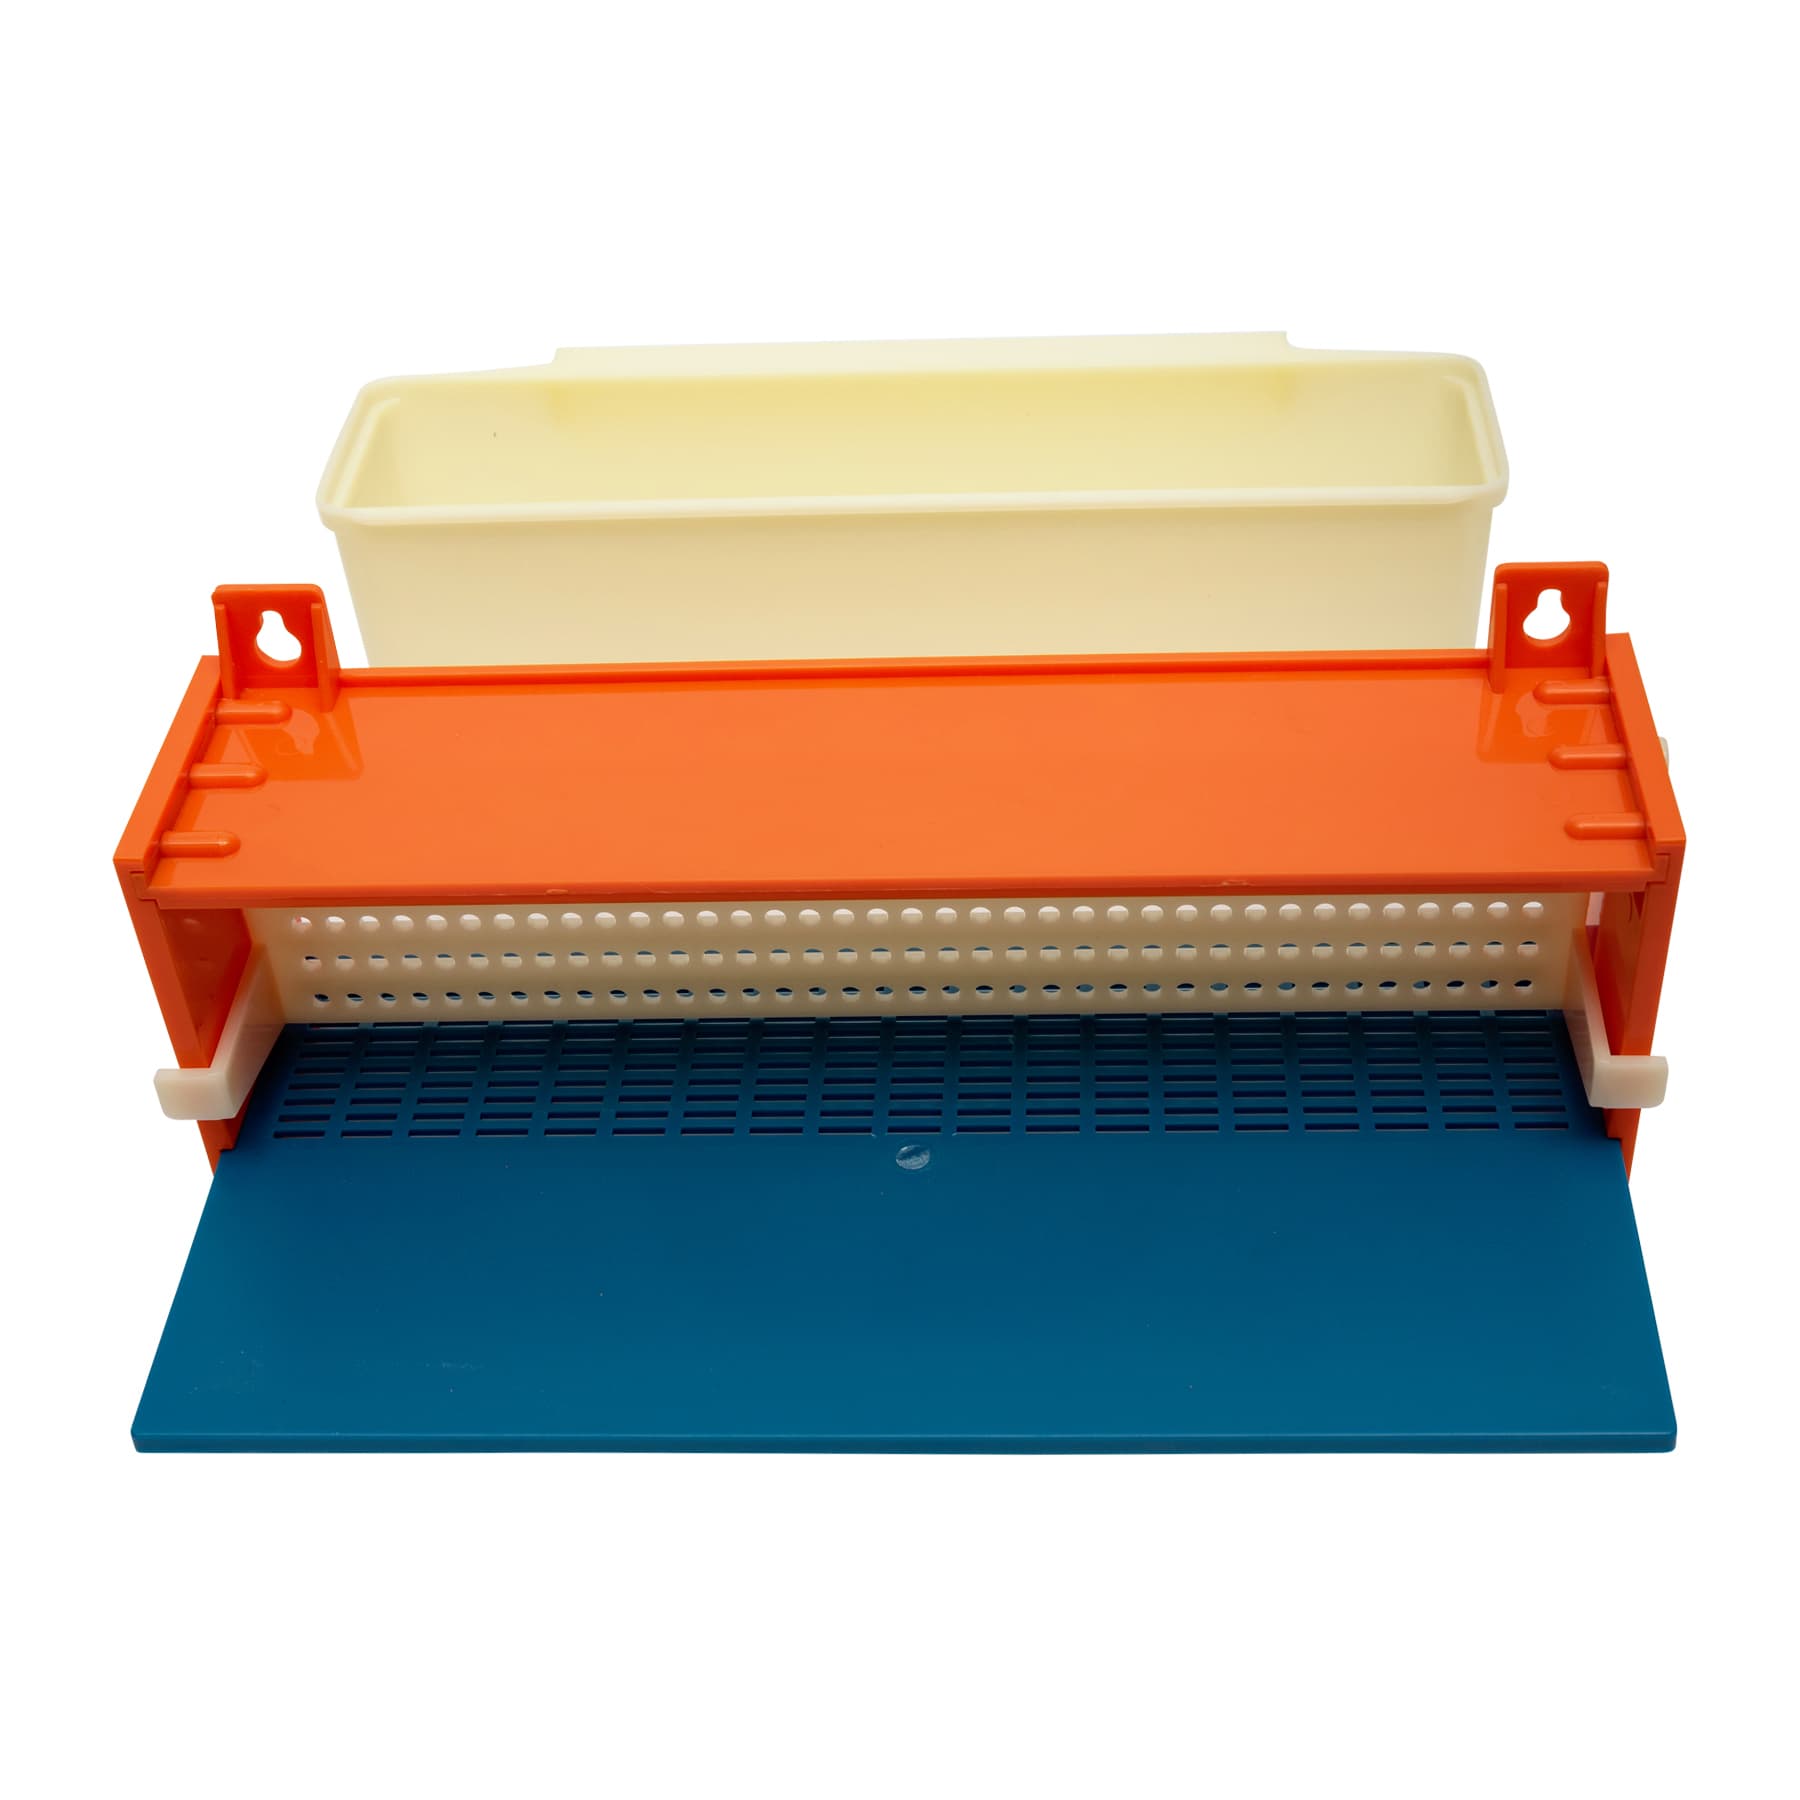 Pollenfalle aus Kunststoff, Farbe: orange blau weiß mit Aufhänger, Breite ca. 30,5 cm